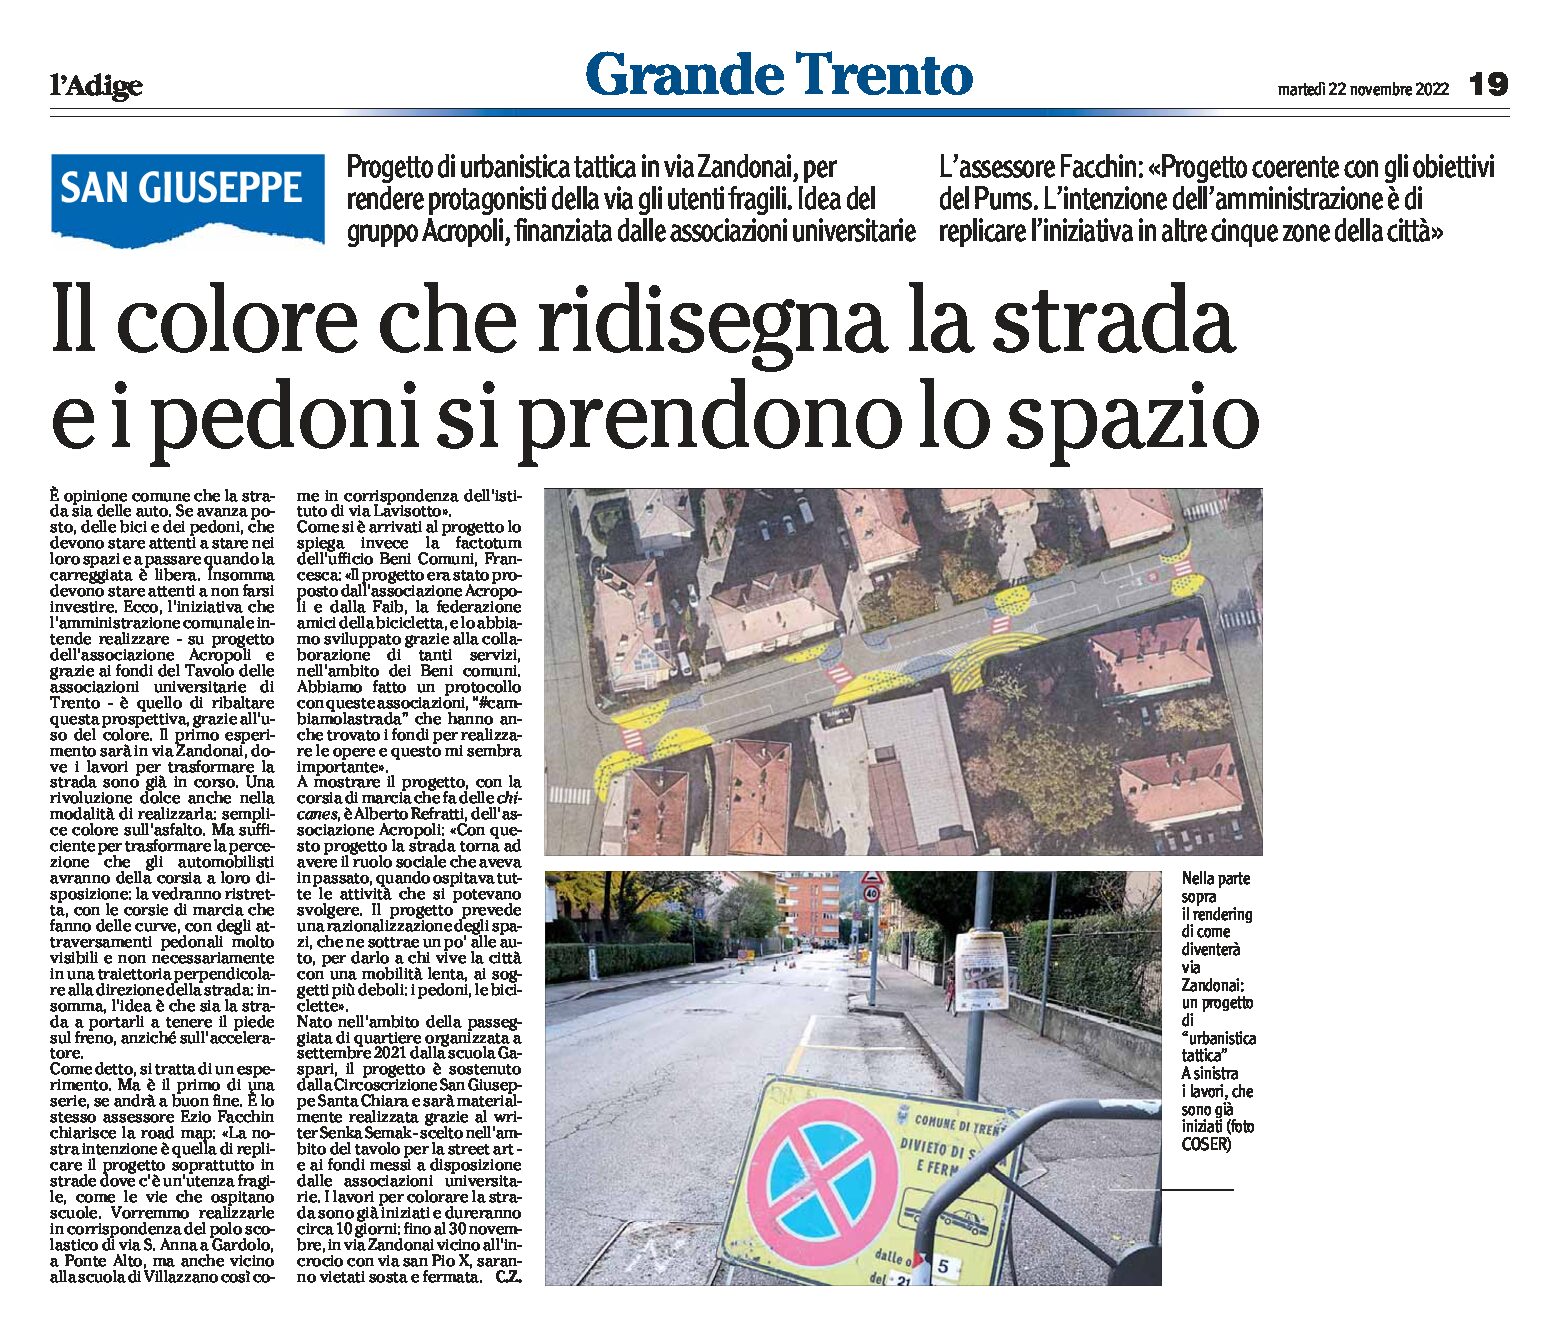 Trento: progetto di urbanistica tattica in via Zandonai. Il colore ridisegna la strada